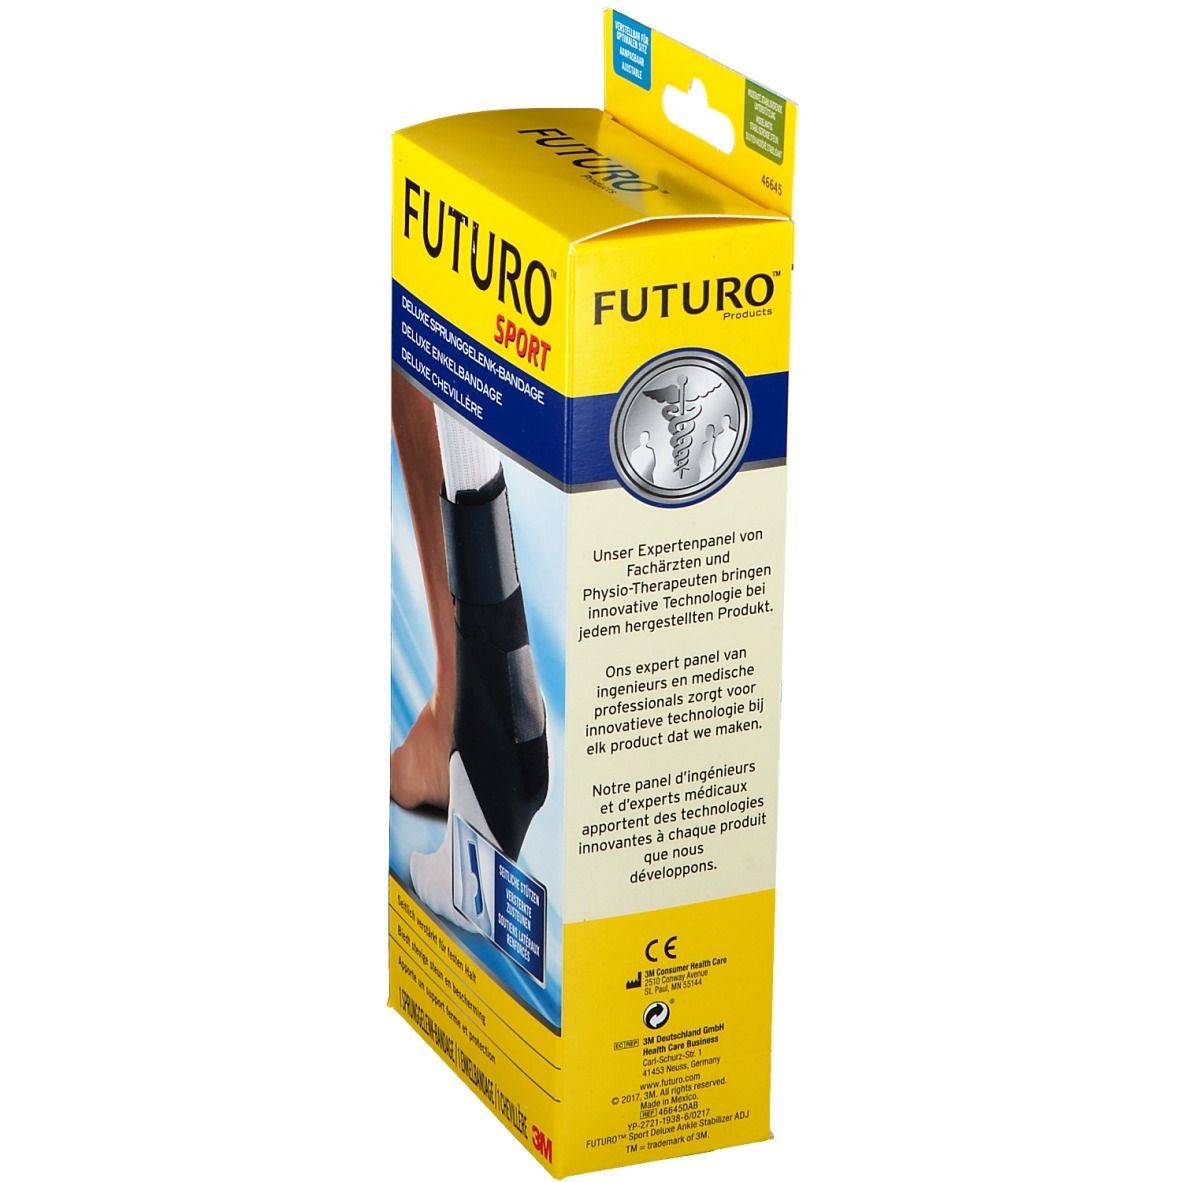 FUTURO™ Sport Deluxe Sprunggelenk-Bandage Einheitsgröße